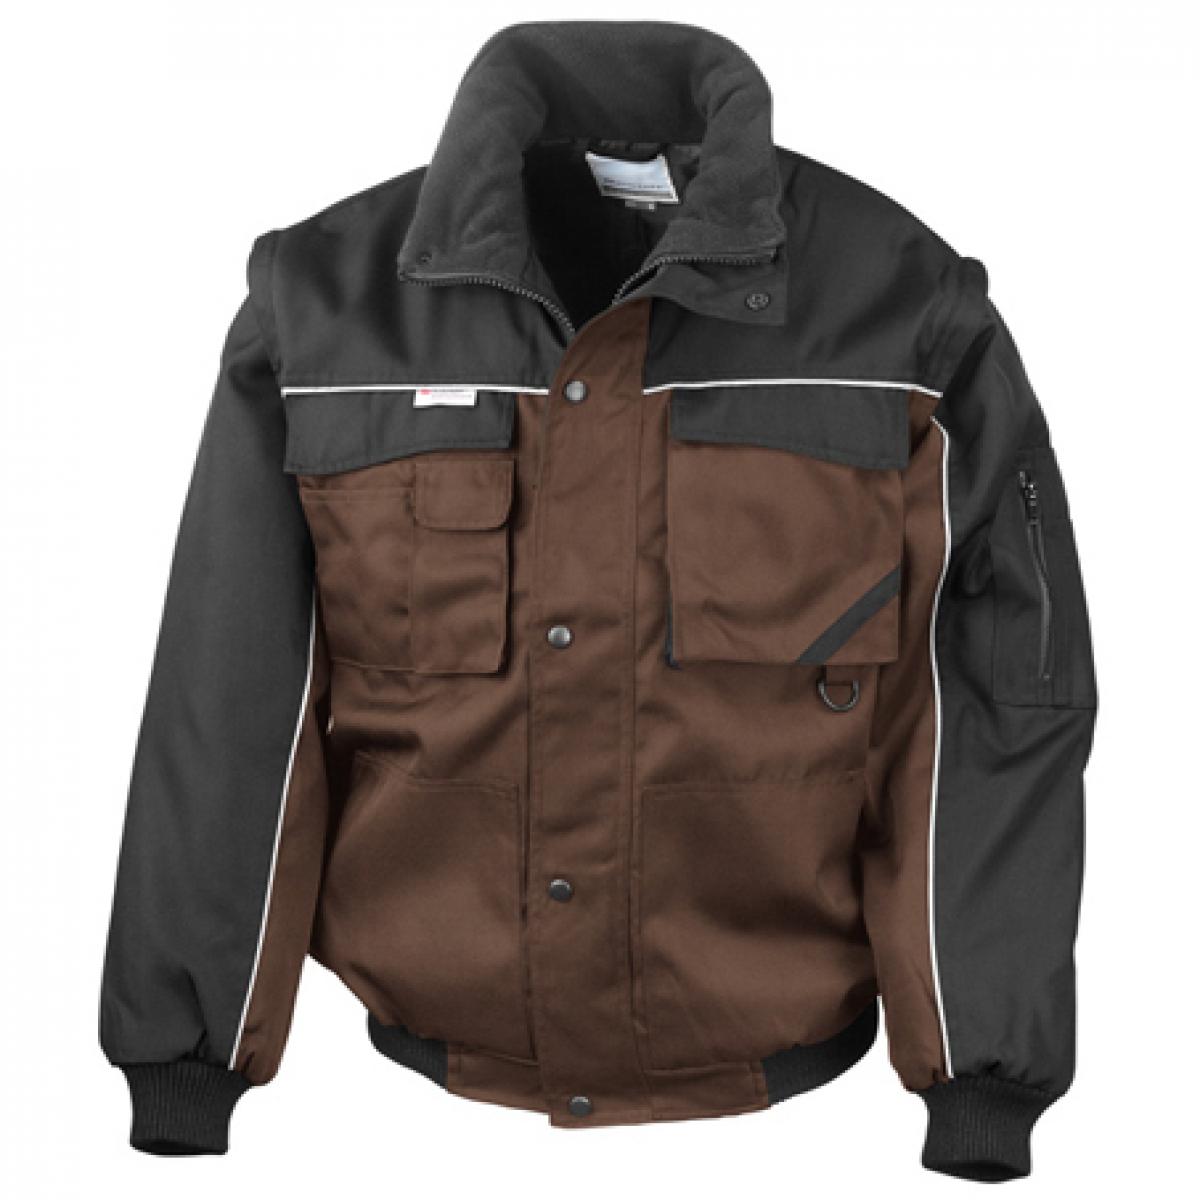 Hersteller: Result WORK-GUARD Herstellernummer: R71X Artikelbezeichnung: Workguard Heavy Duty Jacket / Arbeitsjacke Farbe: Tan/Black